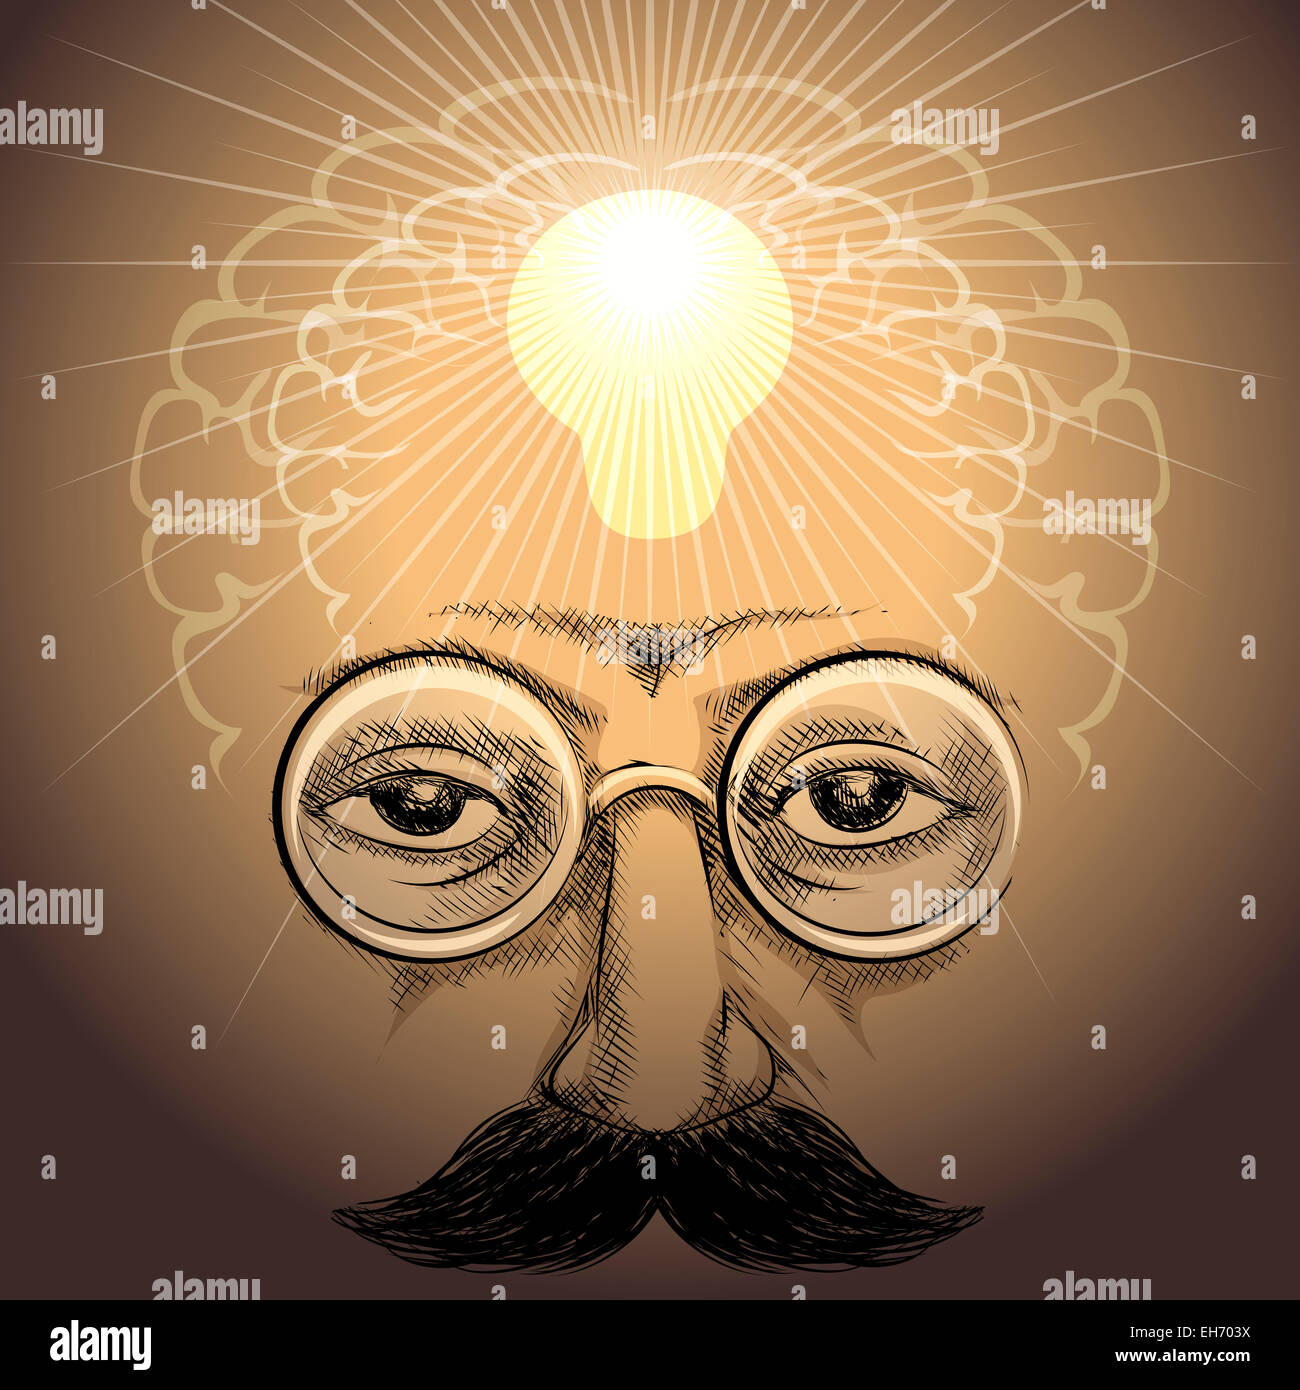 Illustrazione con la faccia di scienziato e lampada illumina la sua intelligenza interna come metafora di scoperta disegnato in uno stile rétro Foto Stock